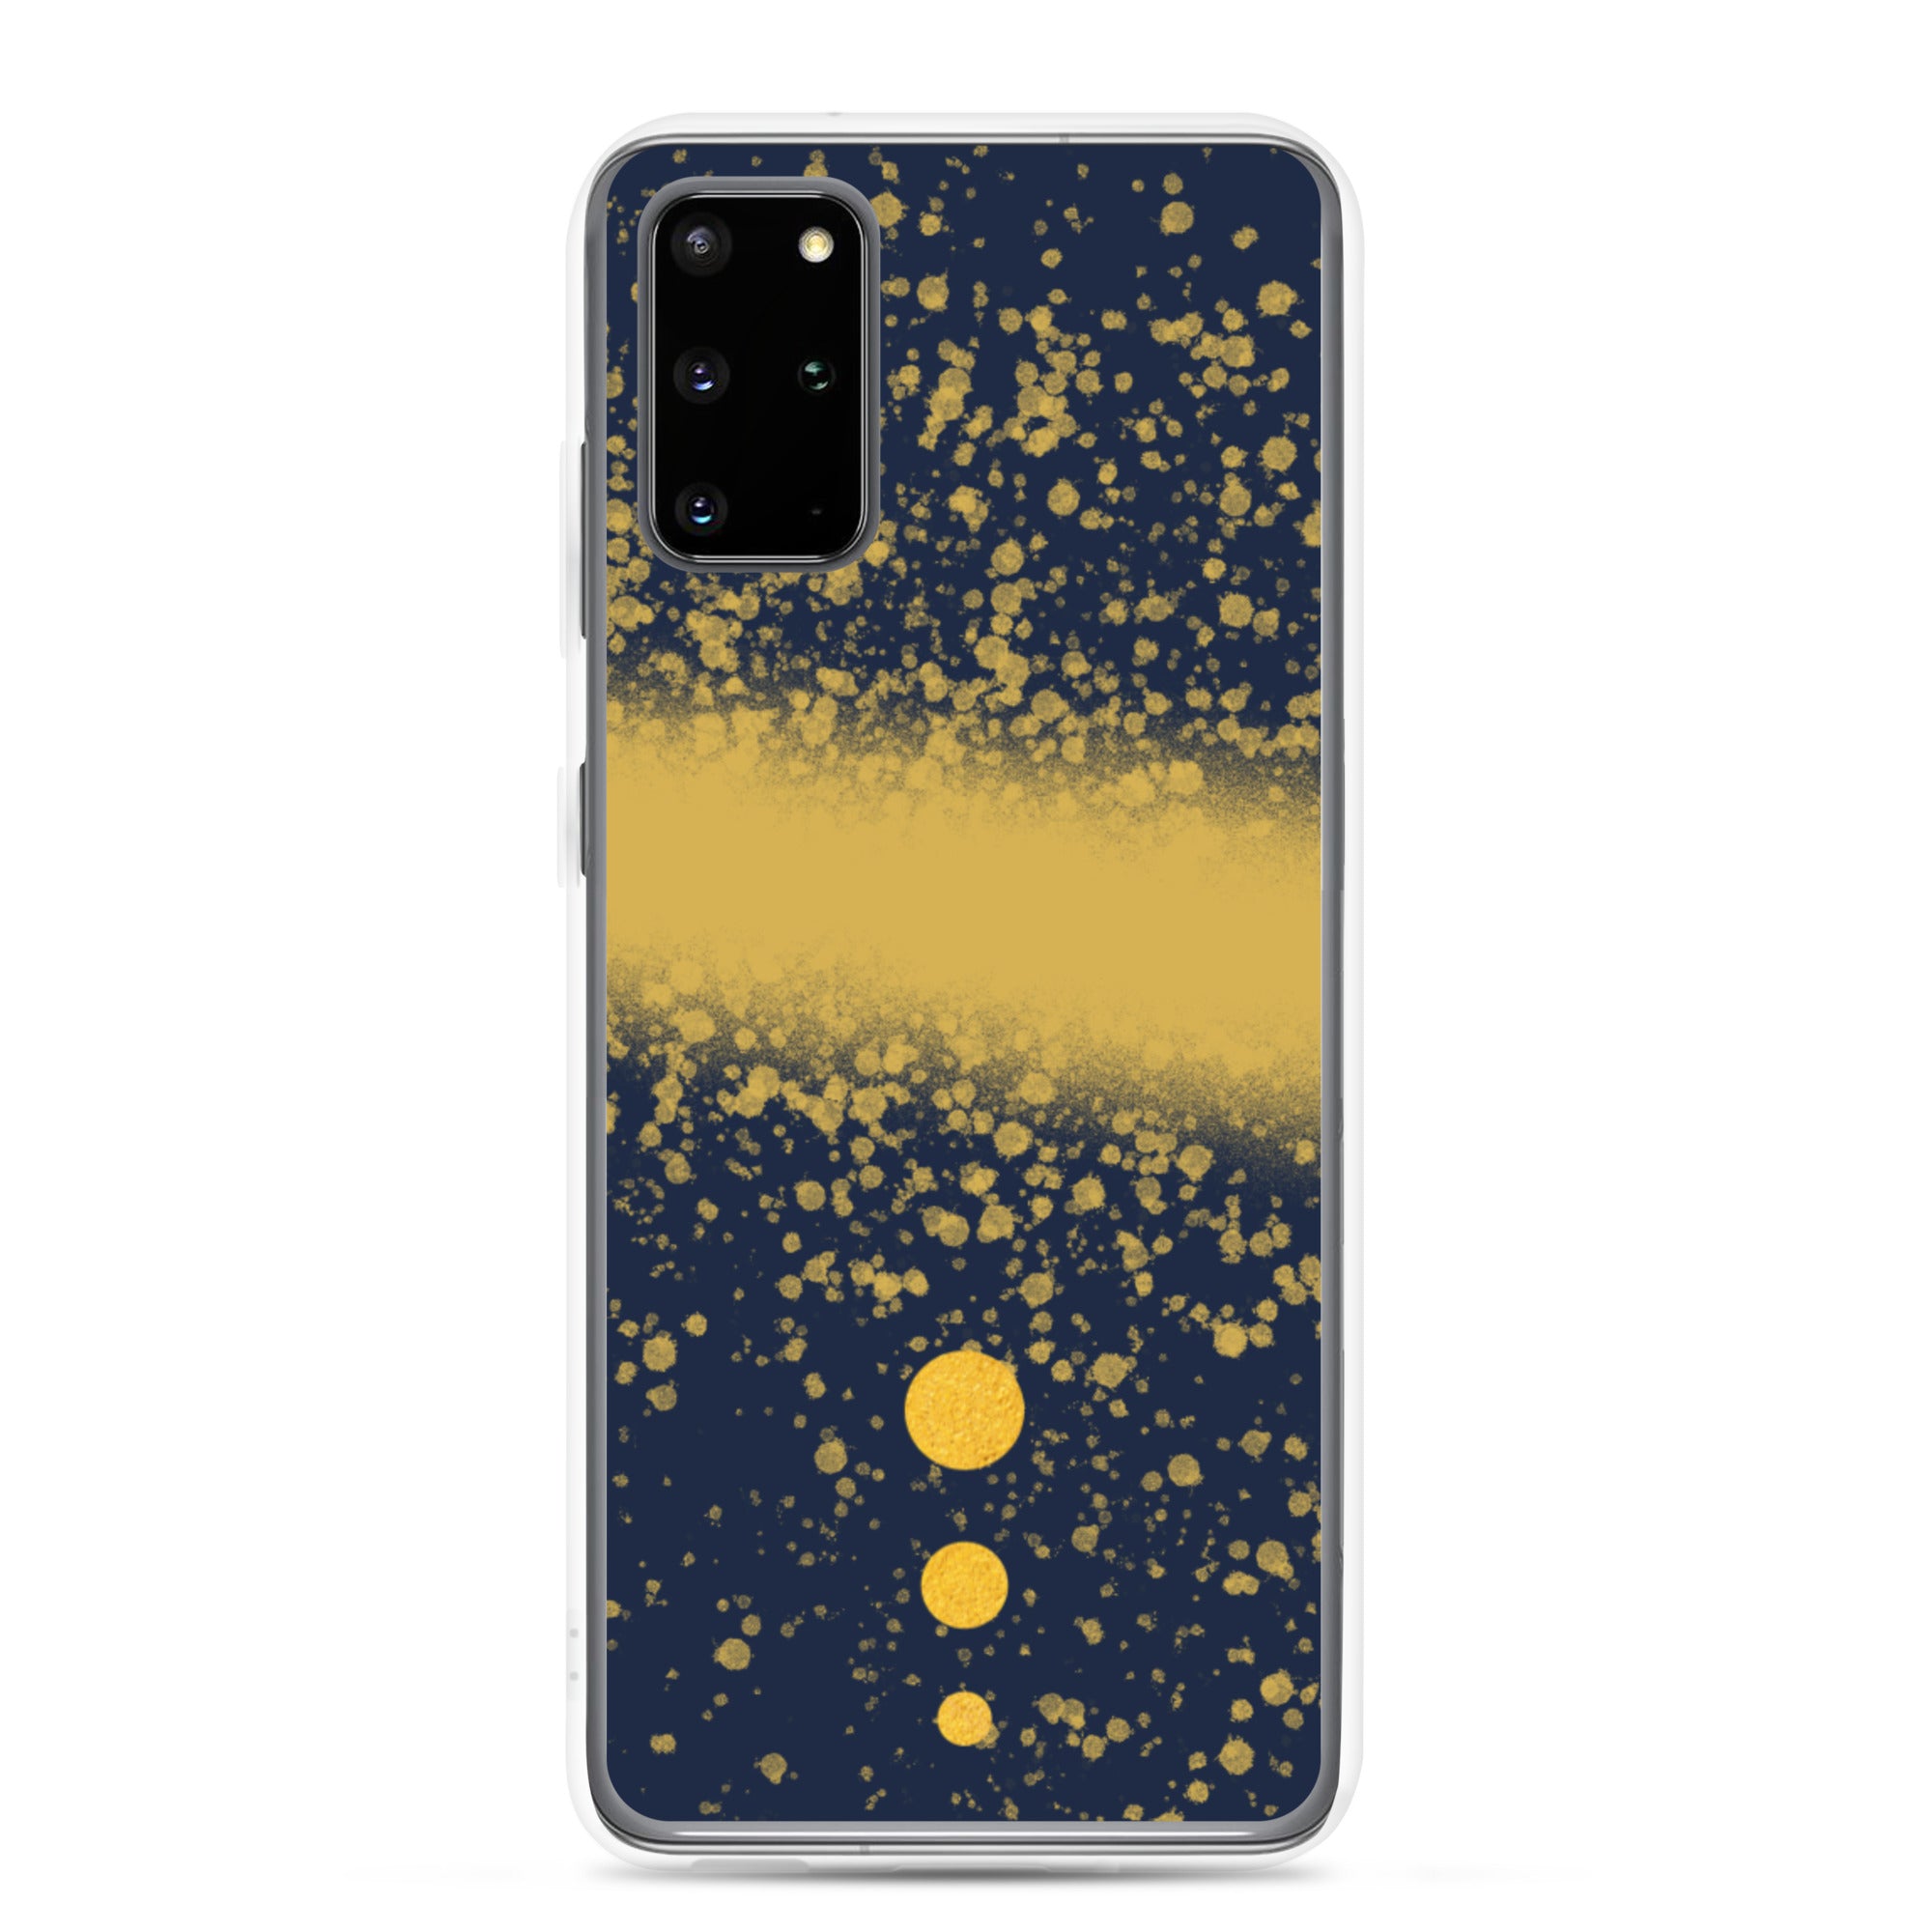 Dune-Spice Dust Samsung Galaxy Phone Case-https://ascensionemporium.net